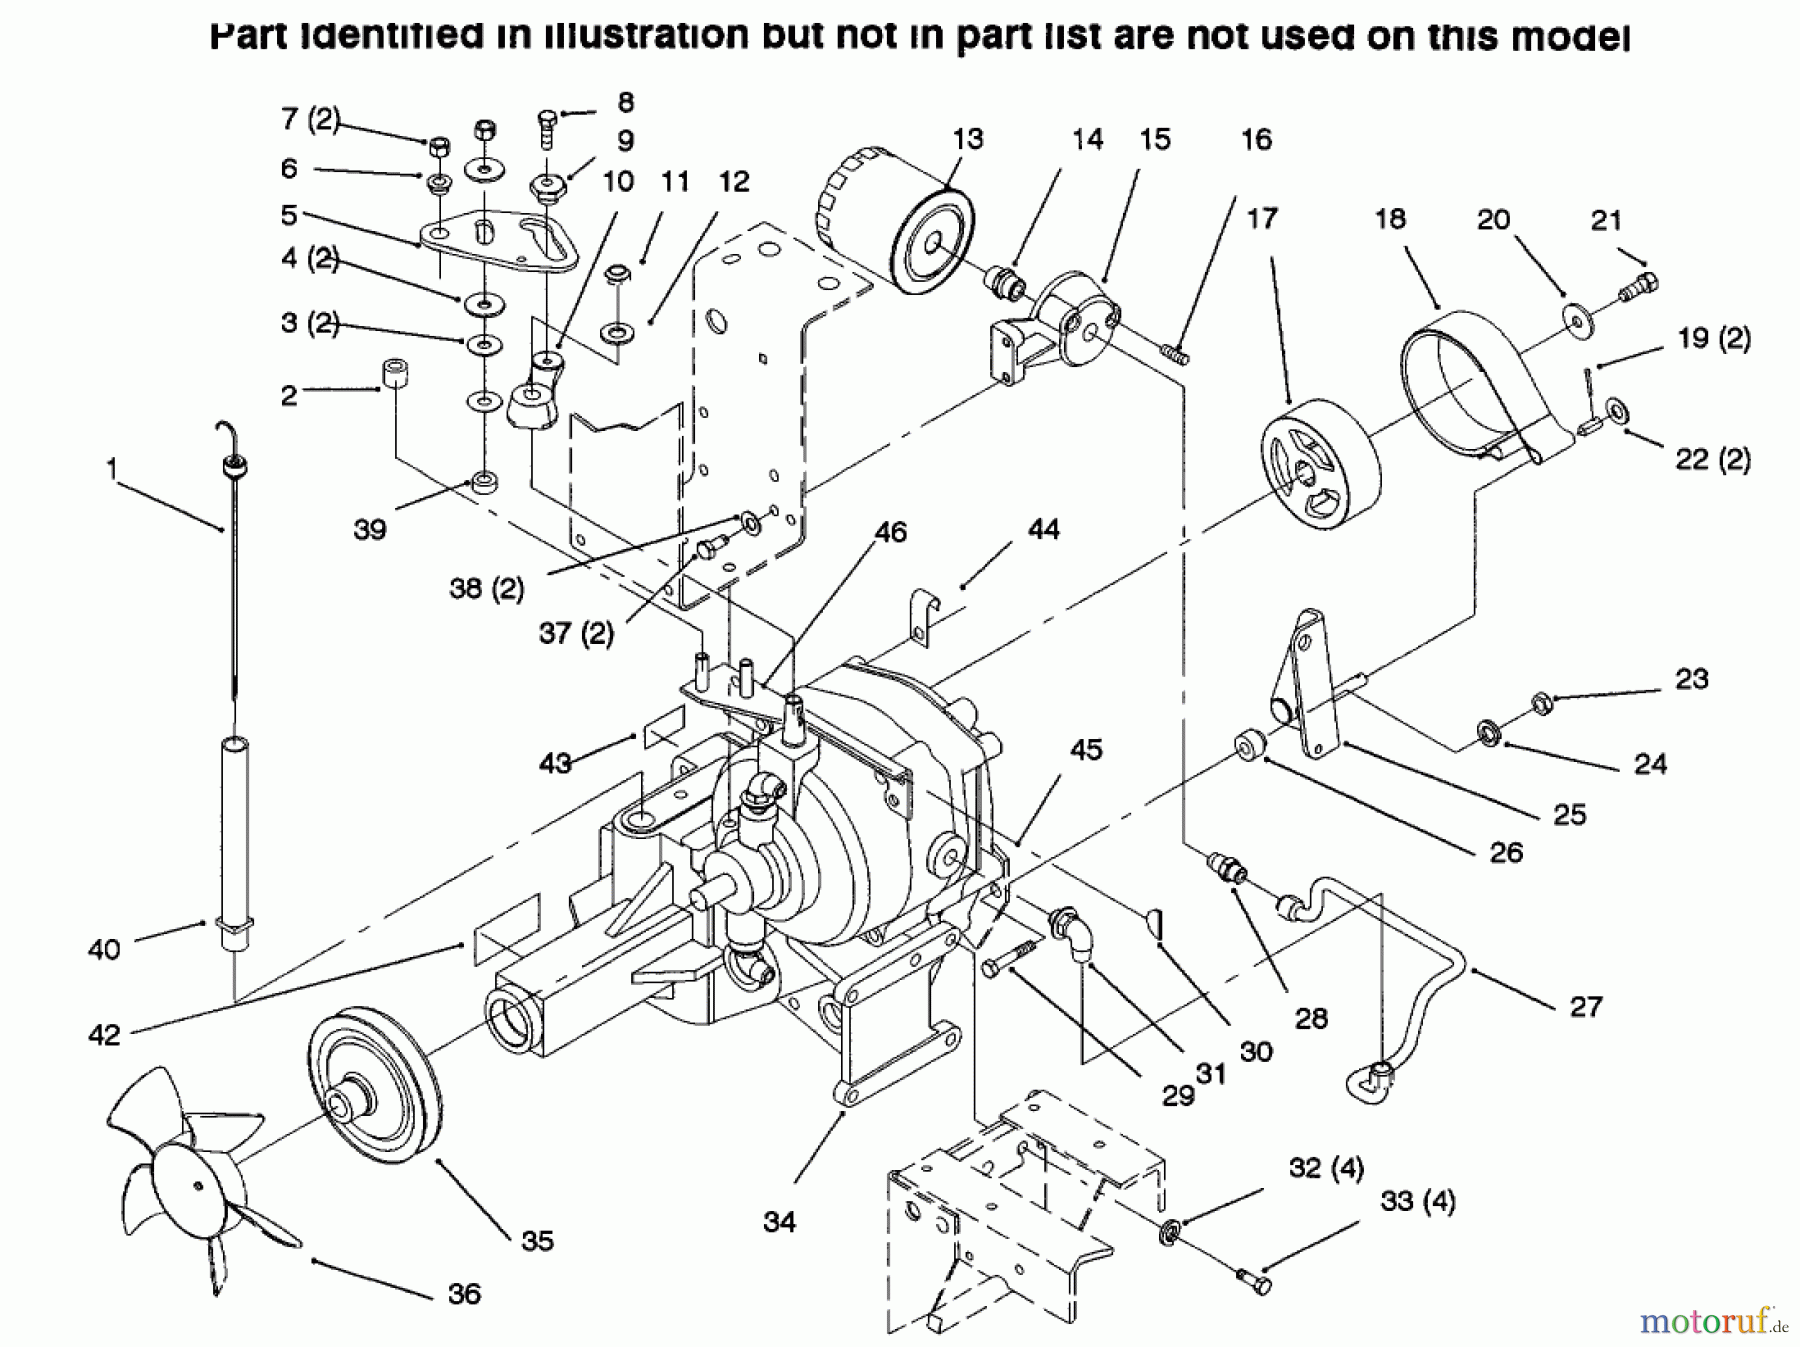  Toro Neu Mowers, Lawn & Garden Tractor Seite 1 73423 (416-H) - Toro 416-H Garden Tractor, 1996 (6900001-6999999) TRANSMISSION